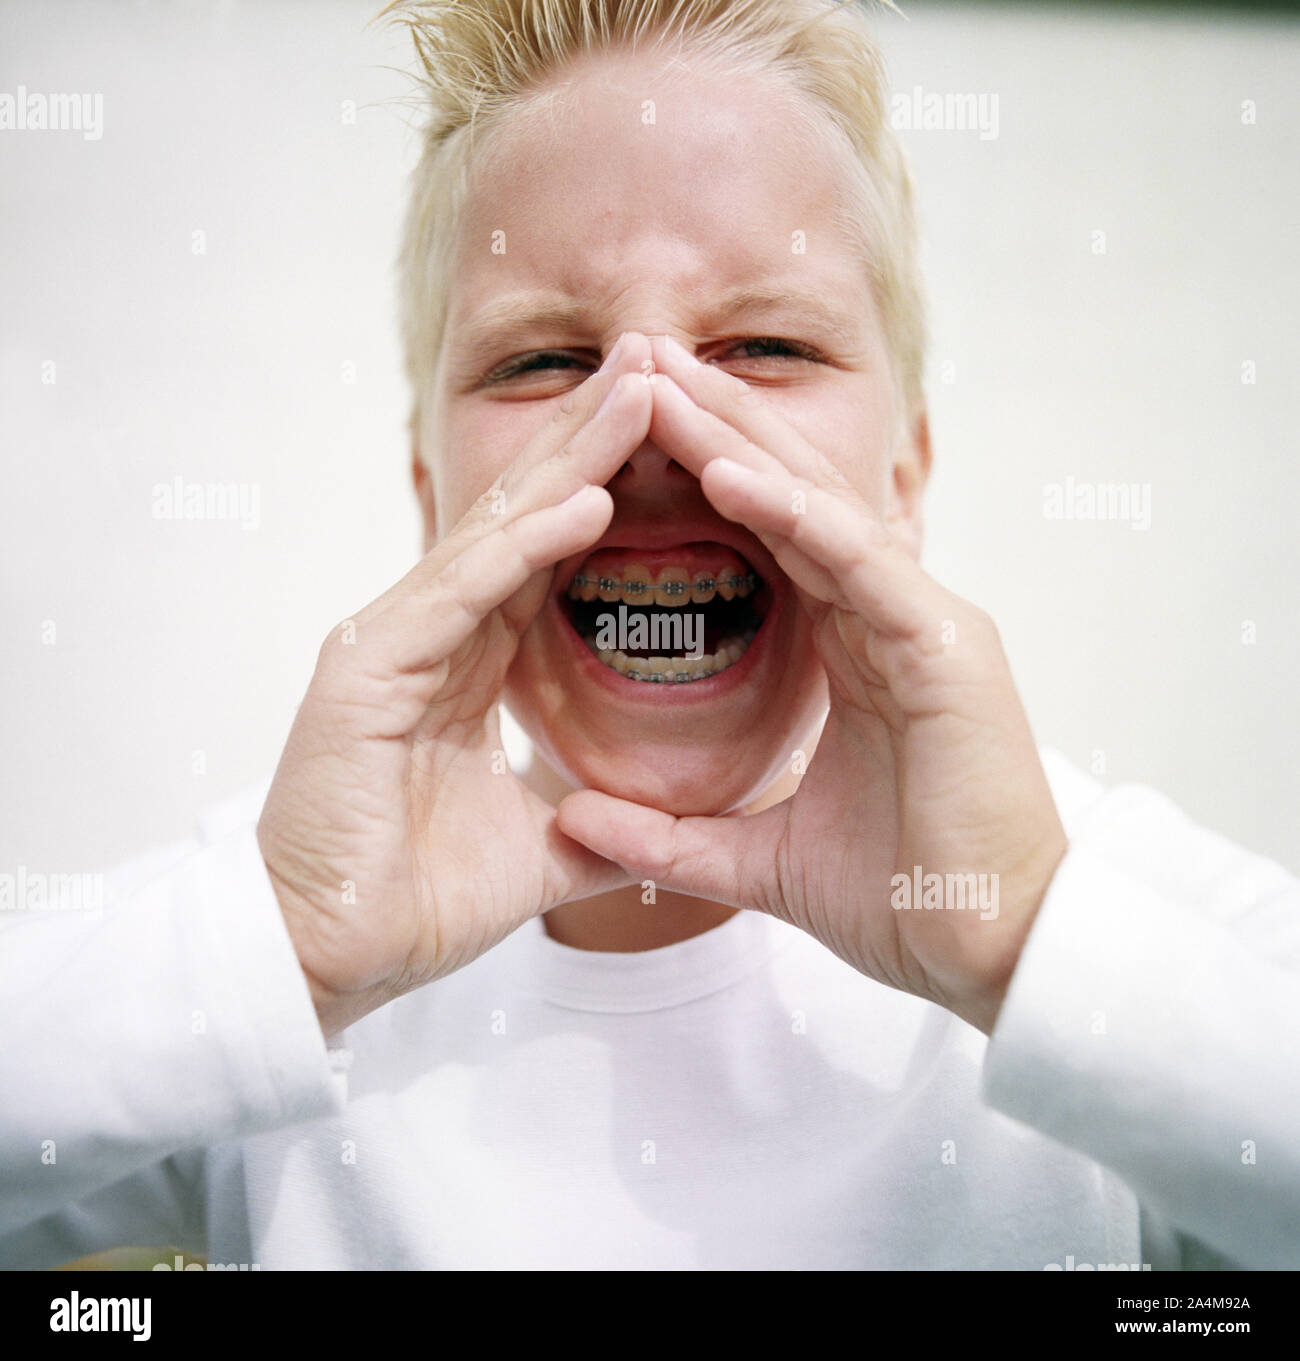 Junge mit Zahnspange - schreien Stockfoto